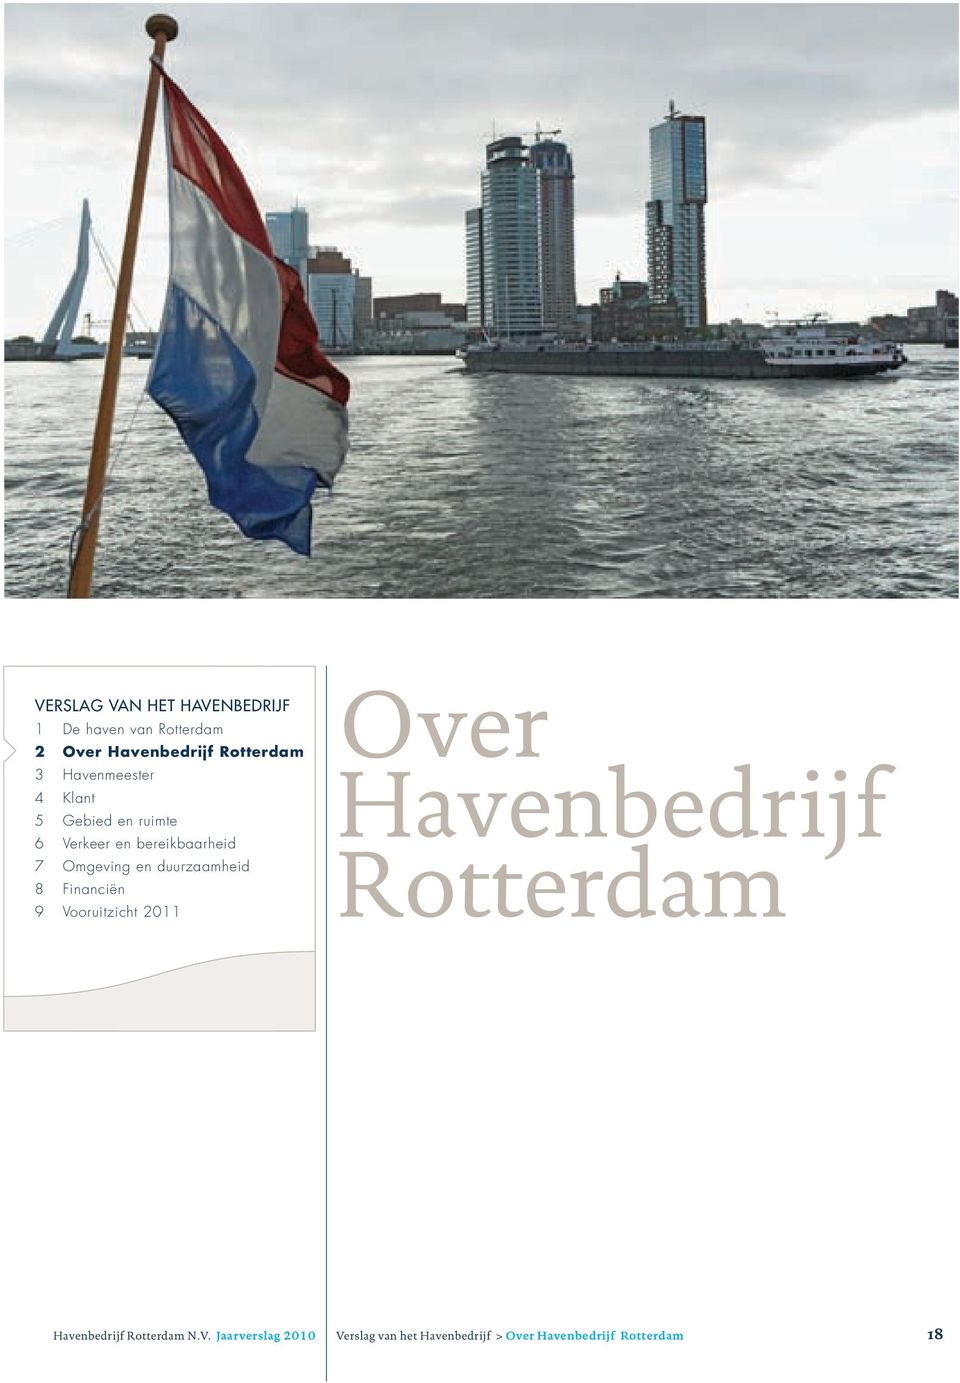 duurzaamheid 8 Financiën 9 Vooruitzicht 2011 Over Havenbedrijf Rotterdam Havenbedrijf